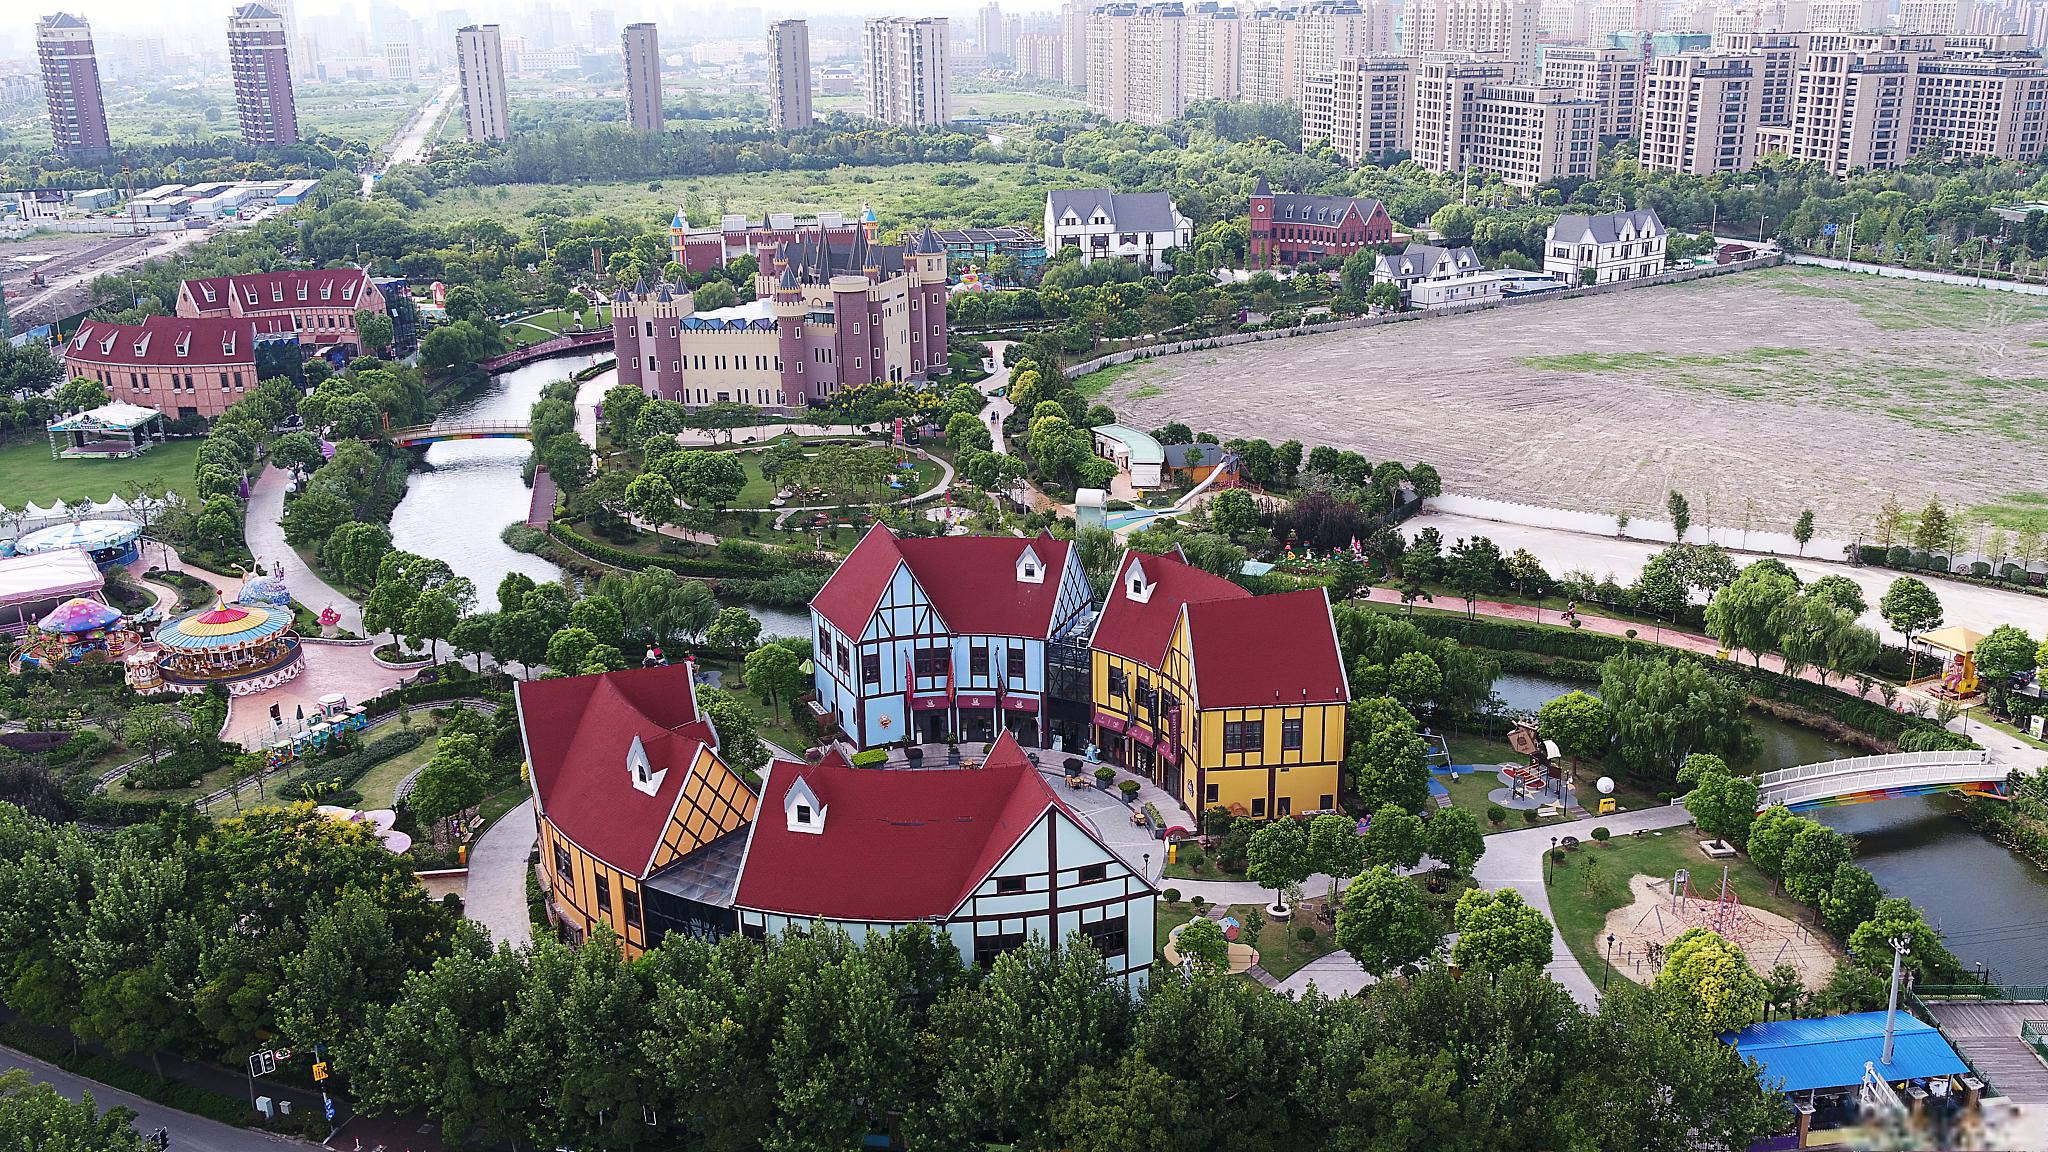 上海安徒生童话乐园 上海安徒生童话乐园是全球首家以丹麦著名作家